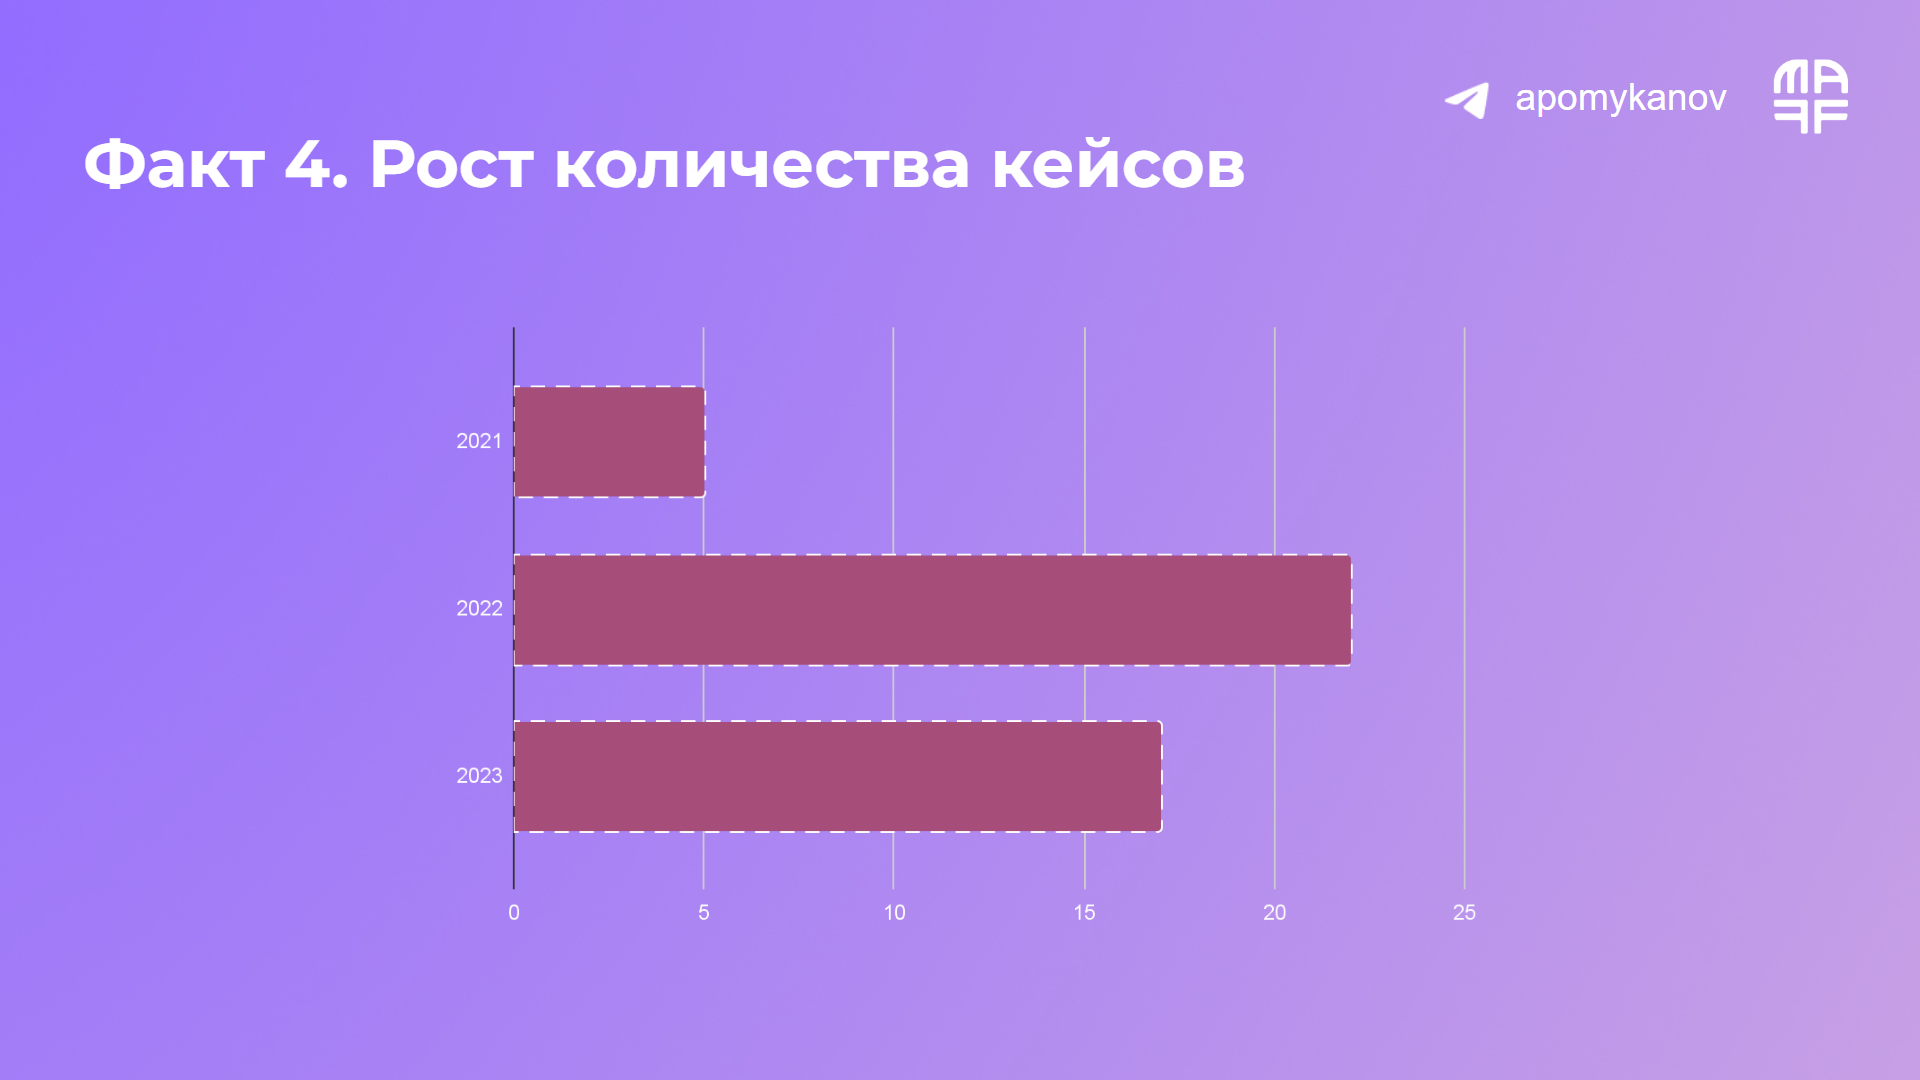 Количество кейсов российских брендов по годам